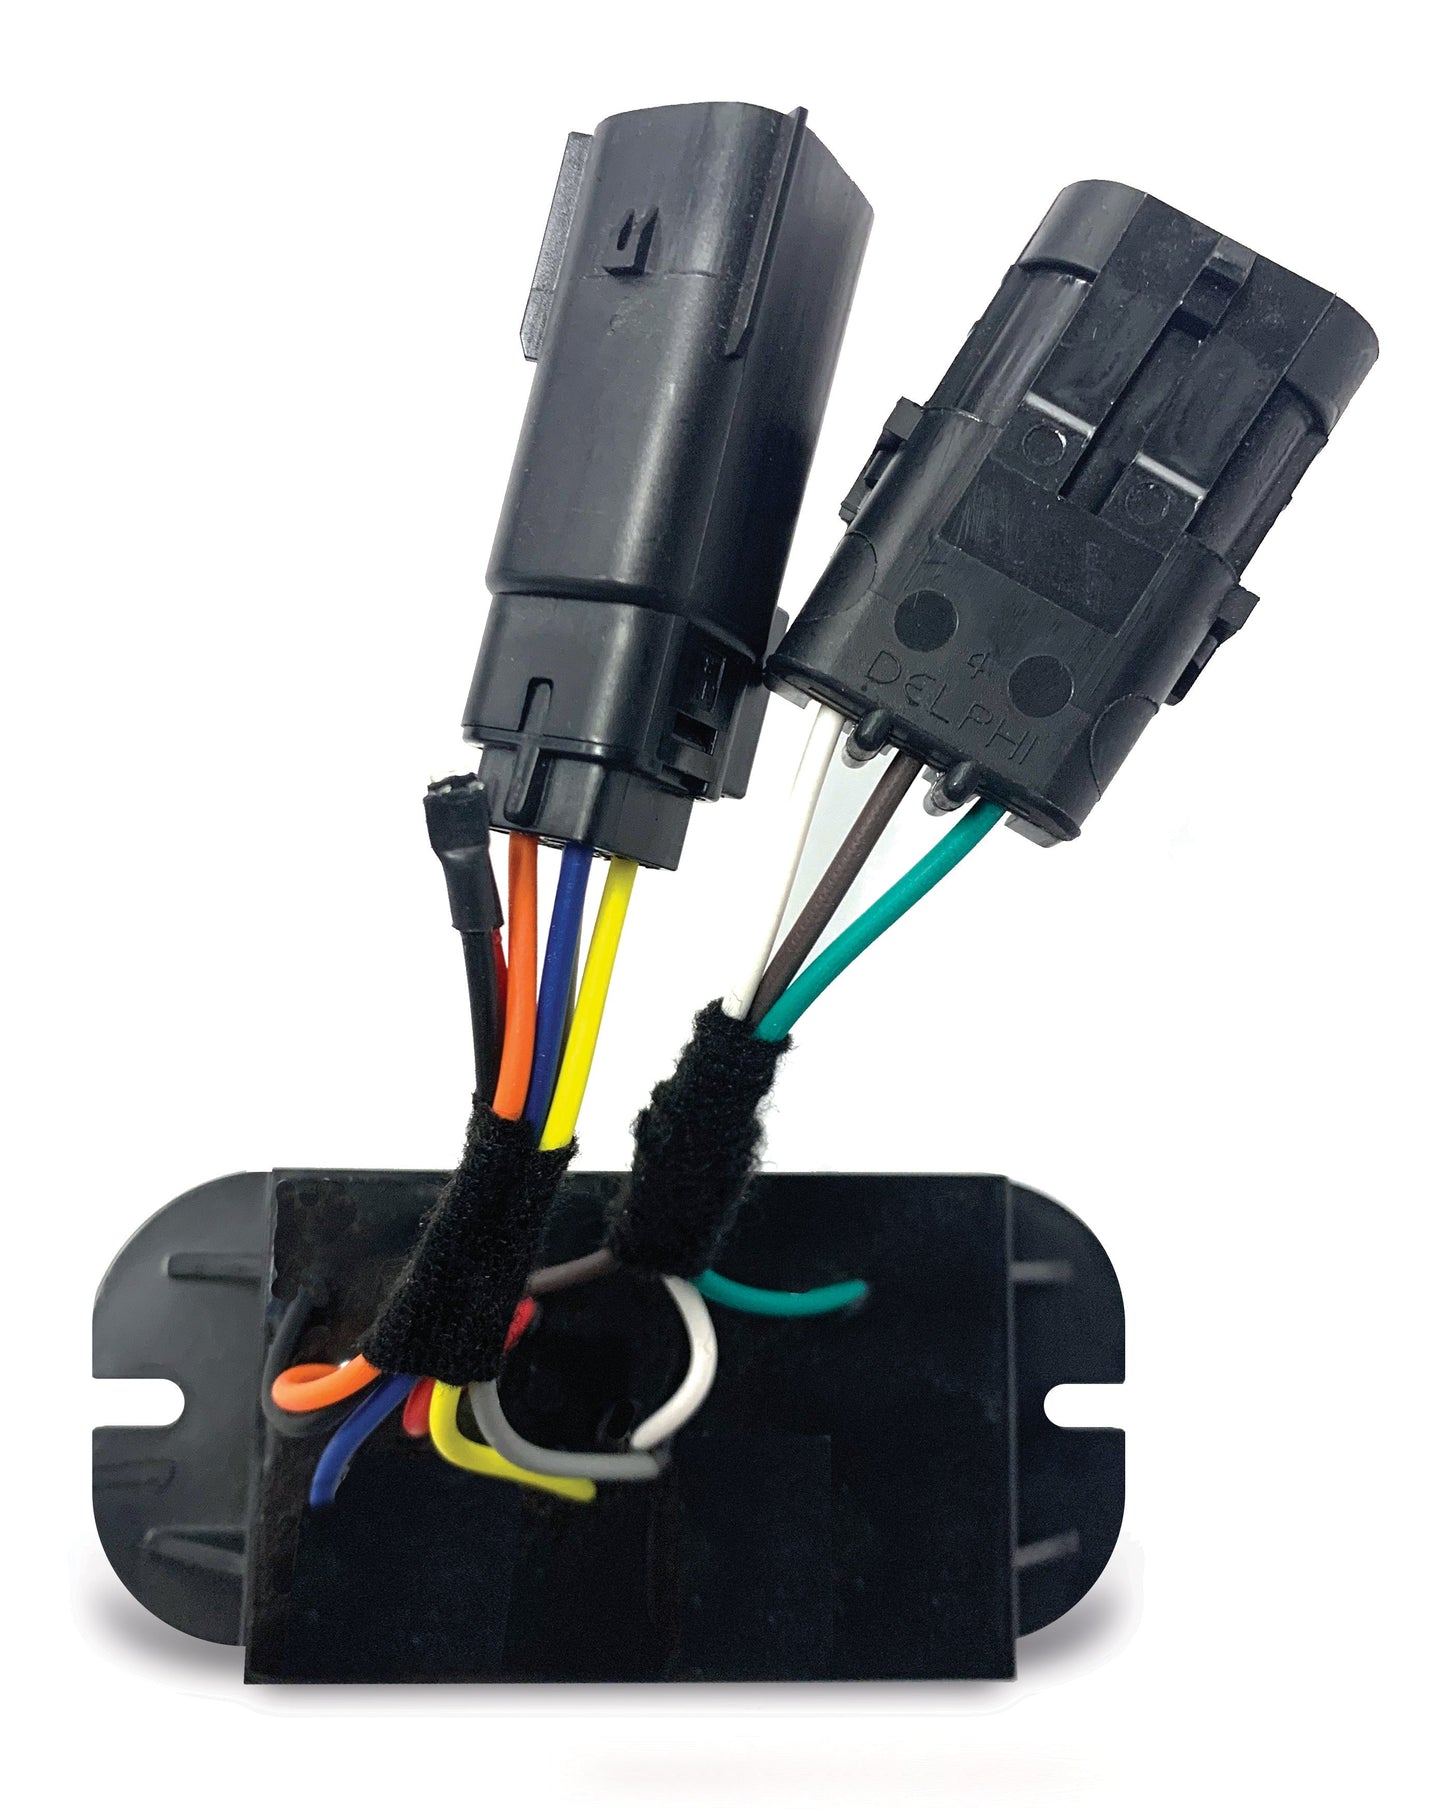 Soundoff Signal ETTFK02 Headlight & Taillight Flashers